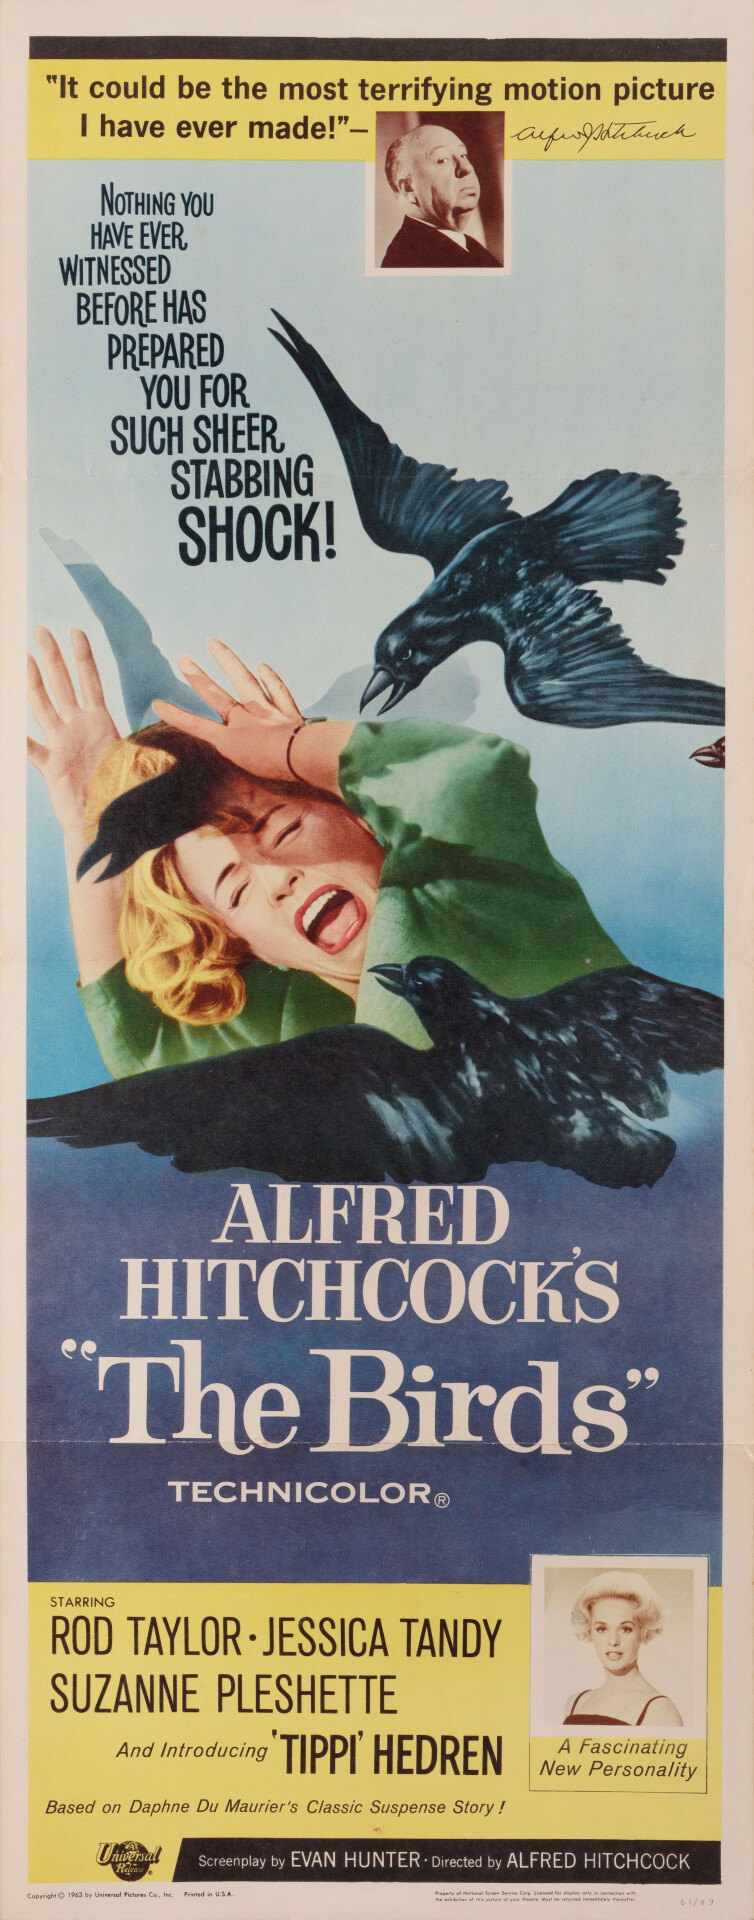 Птицы (The Birds, 1963), режиссёр Альфред Хичкок, американский постер к фильму (ужасы, 1963 год) (4)